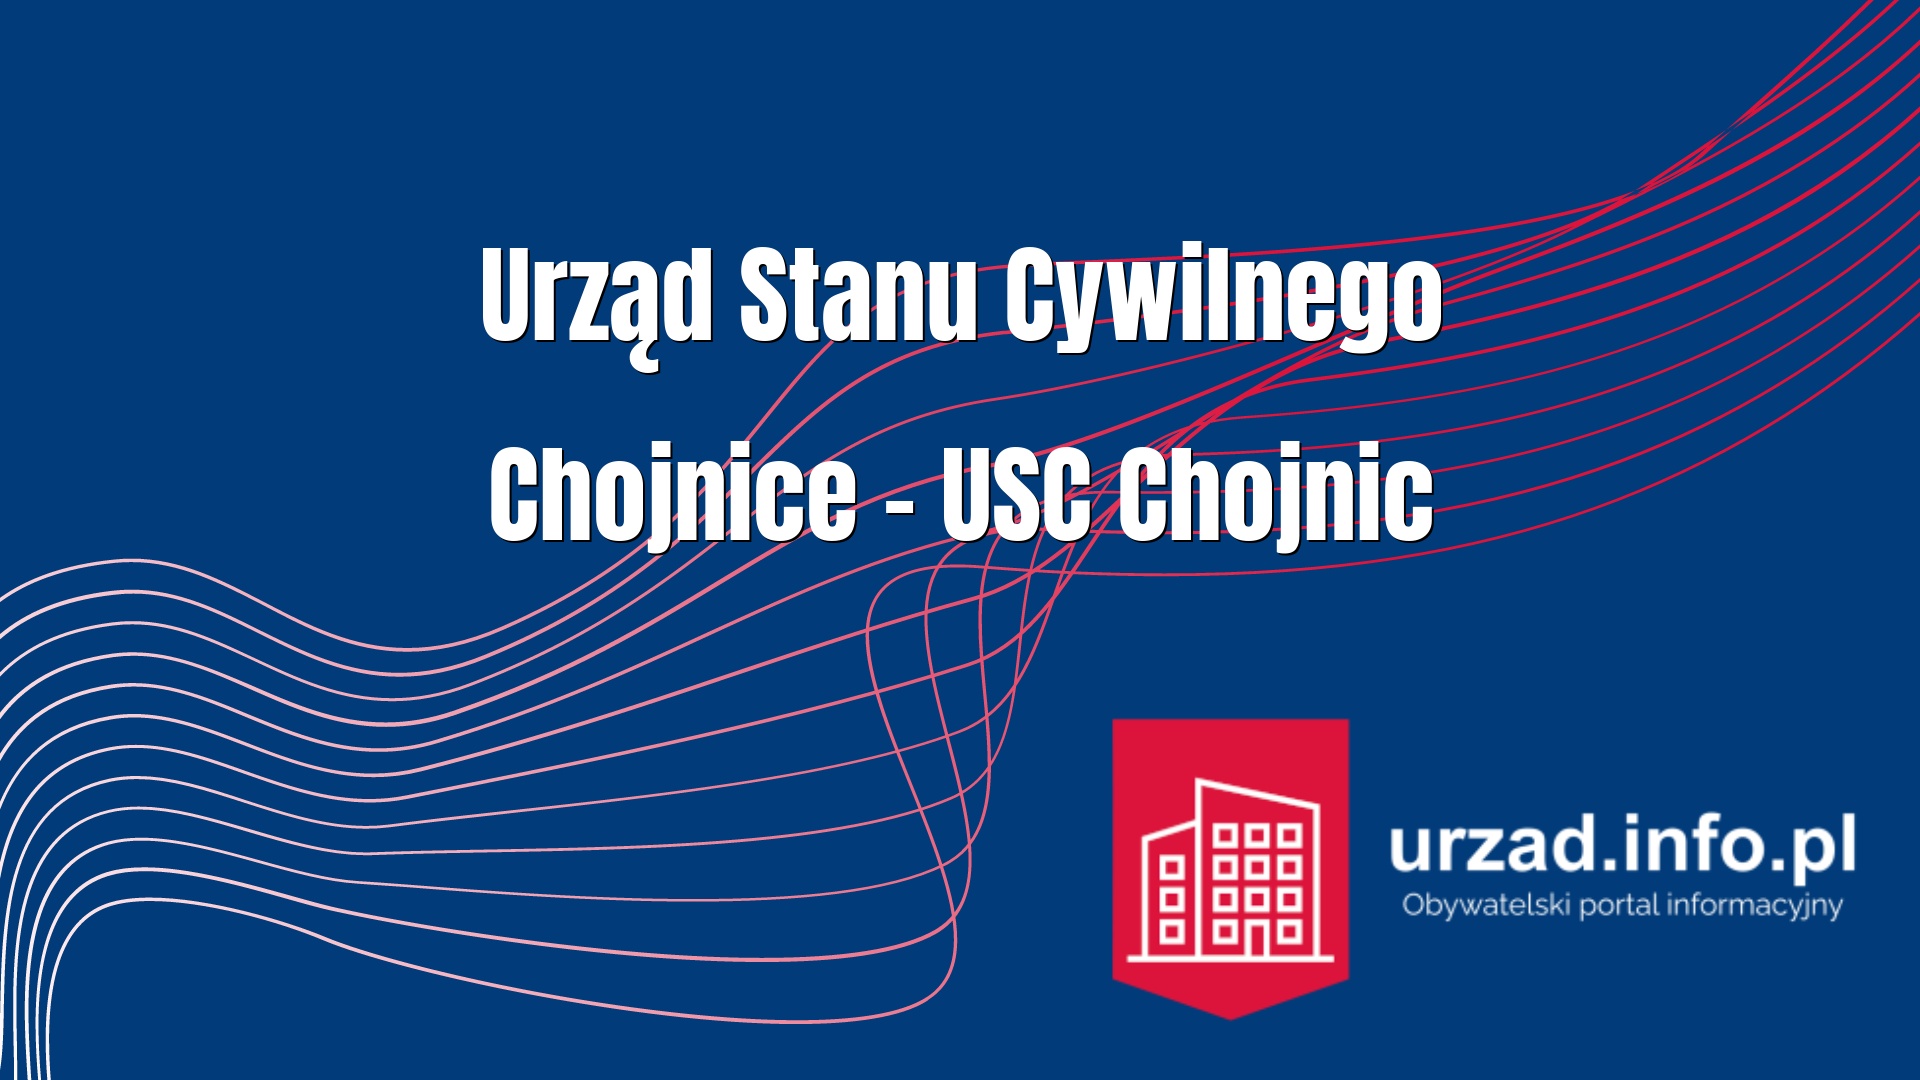 Urząd Stanu Cywilnego Chojnice – USC Chojnic